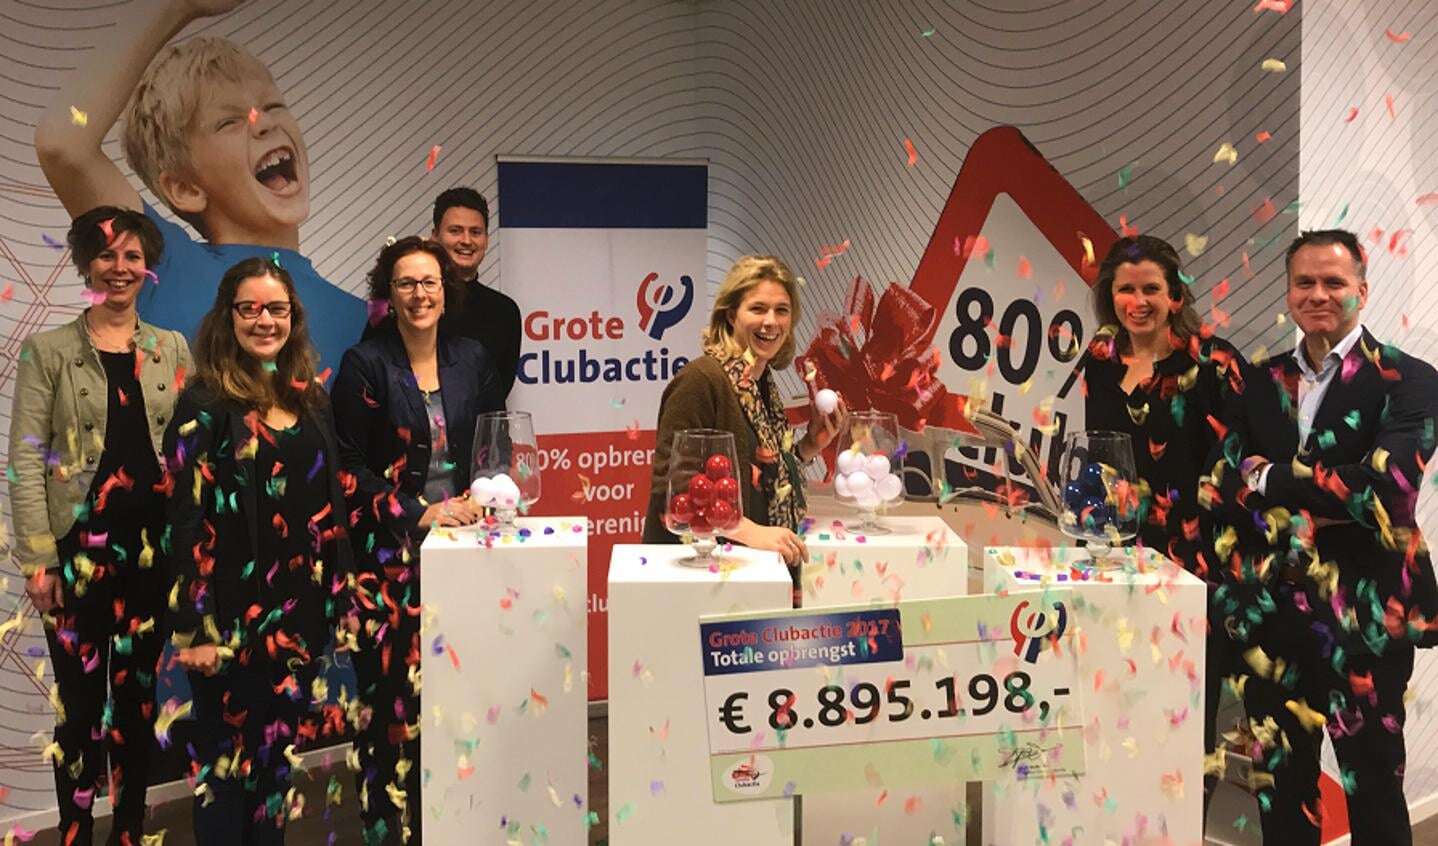 De landelijke opbrengst van de Grote Clubactie 2017 is € 8.895.198,00